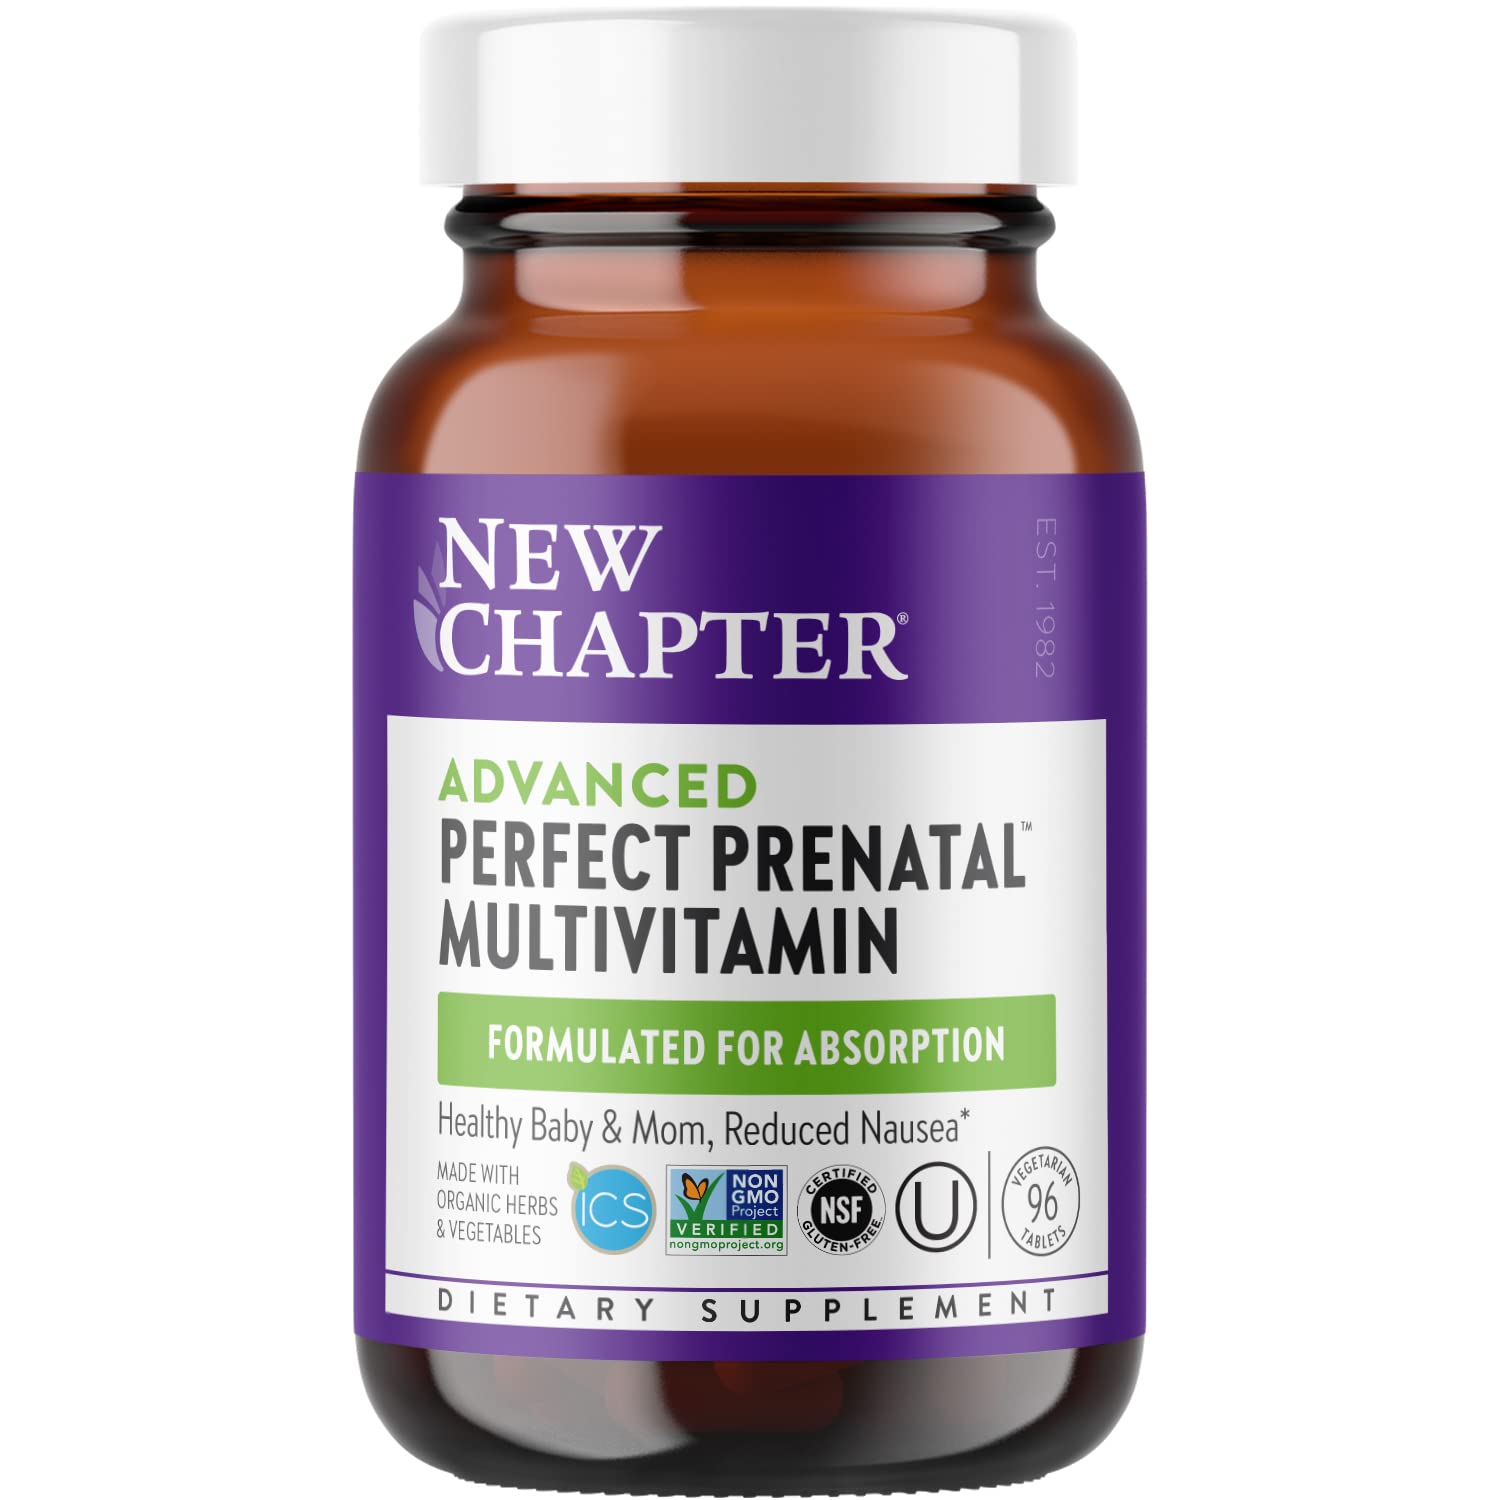 New Chapter Advanced Perfect Prenatal Multivitamin